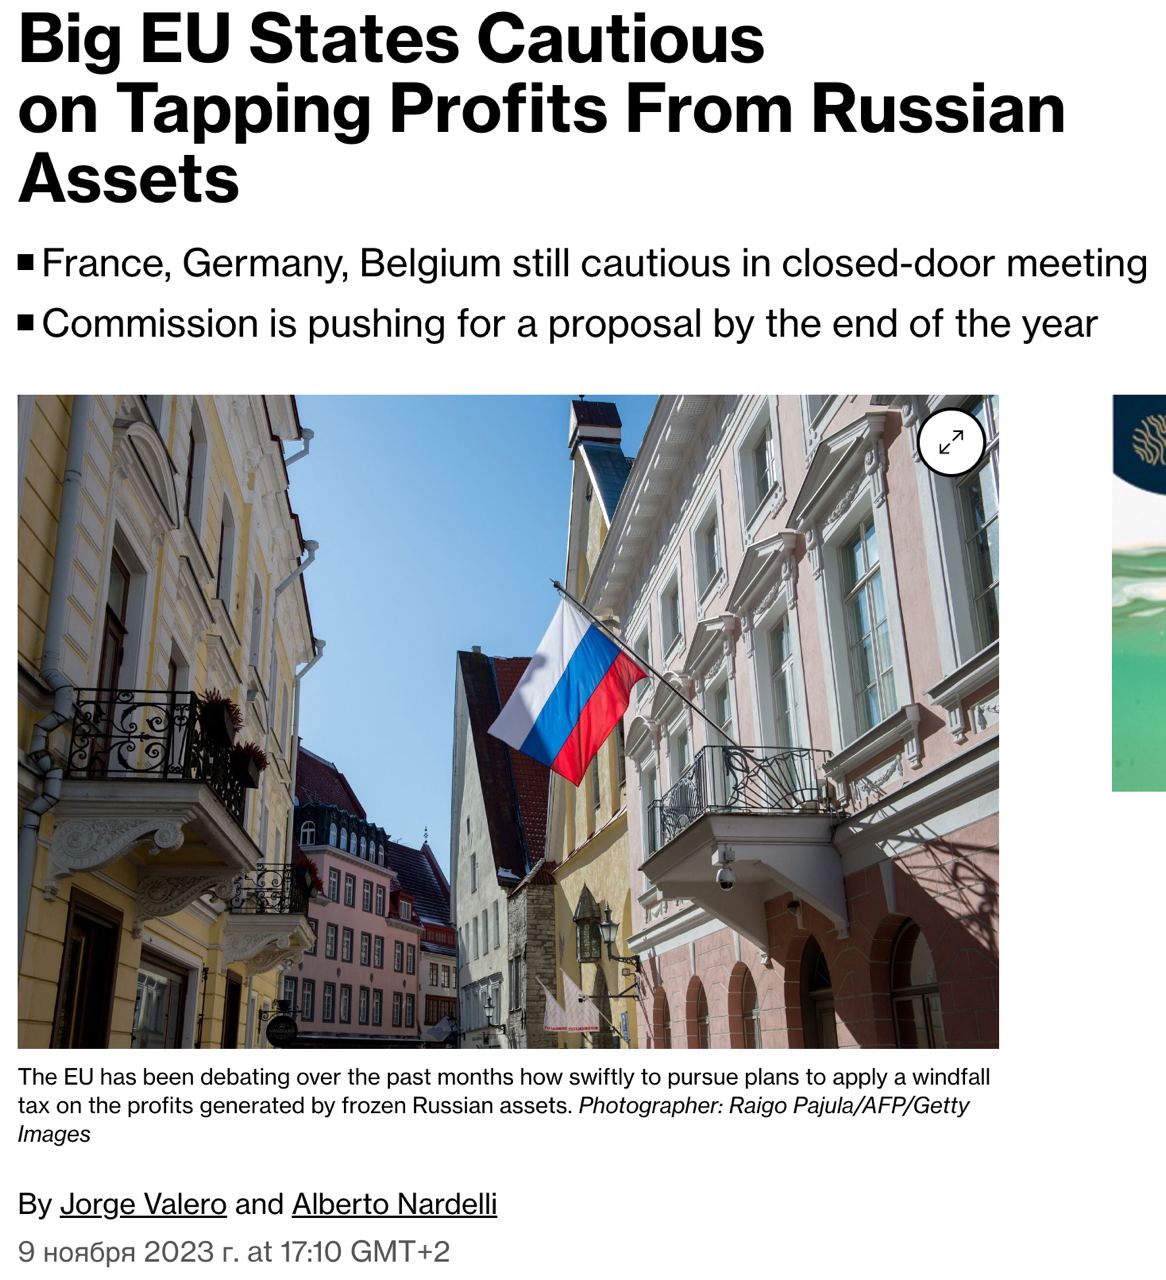 ЕС опасается использовать прибыль от замороженных активов РФ